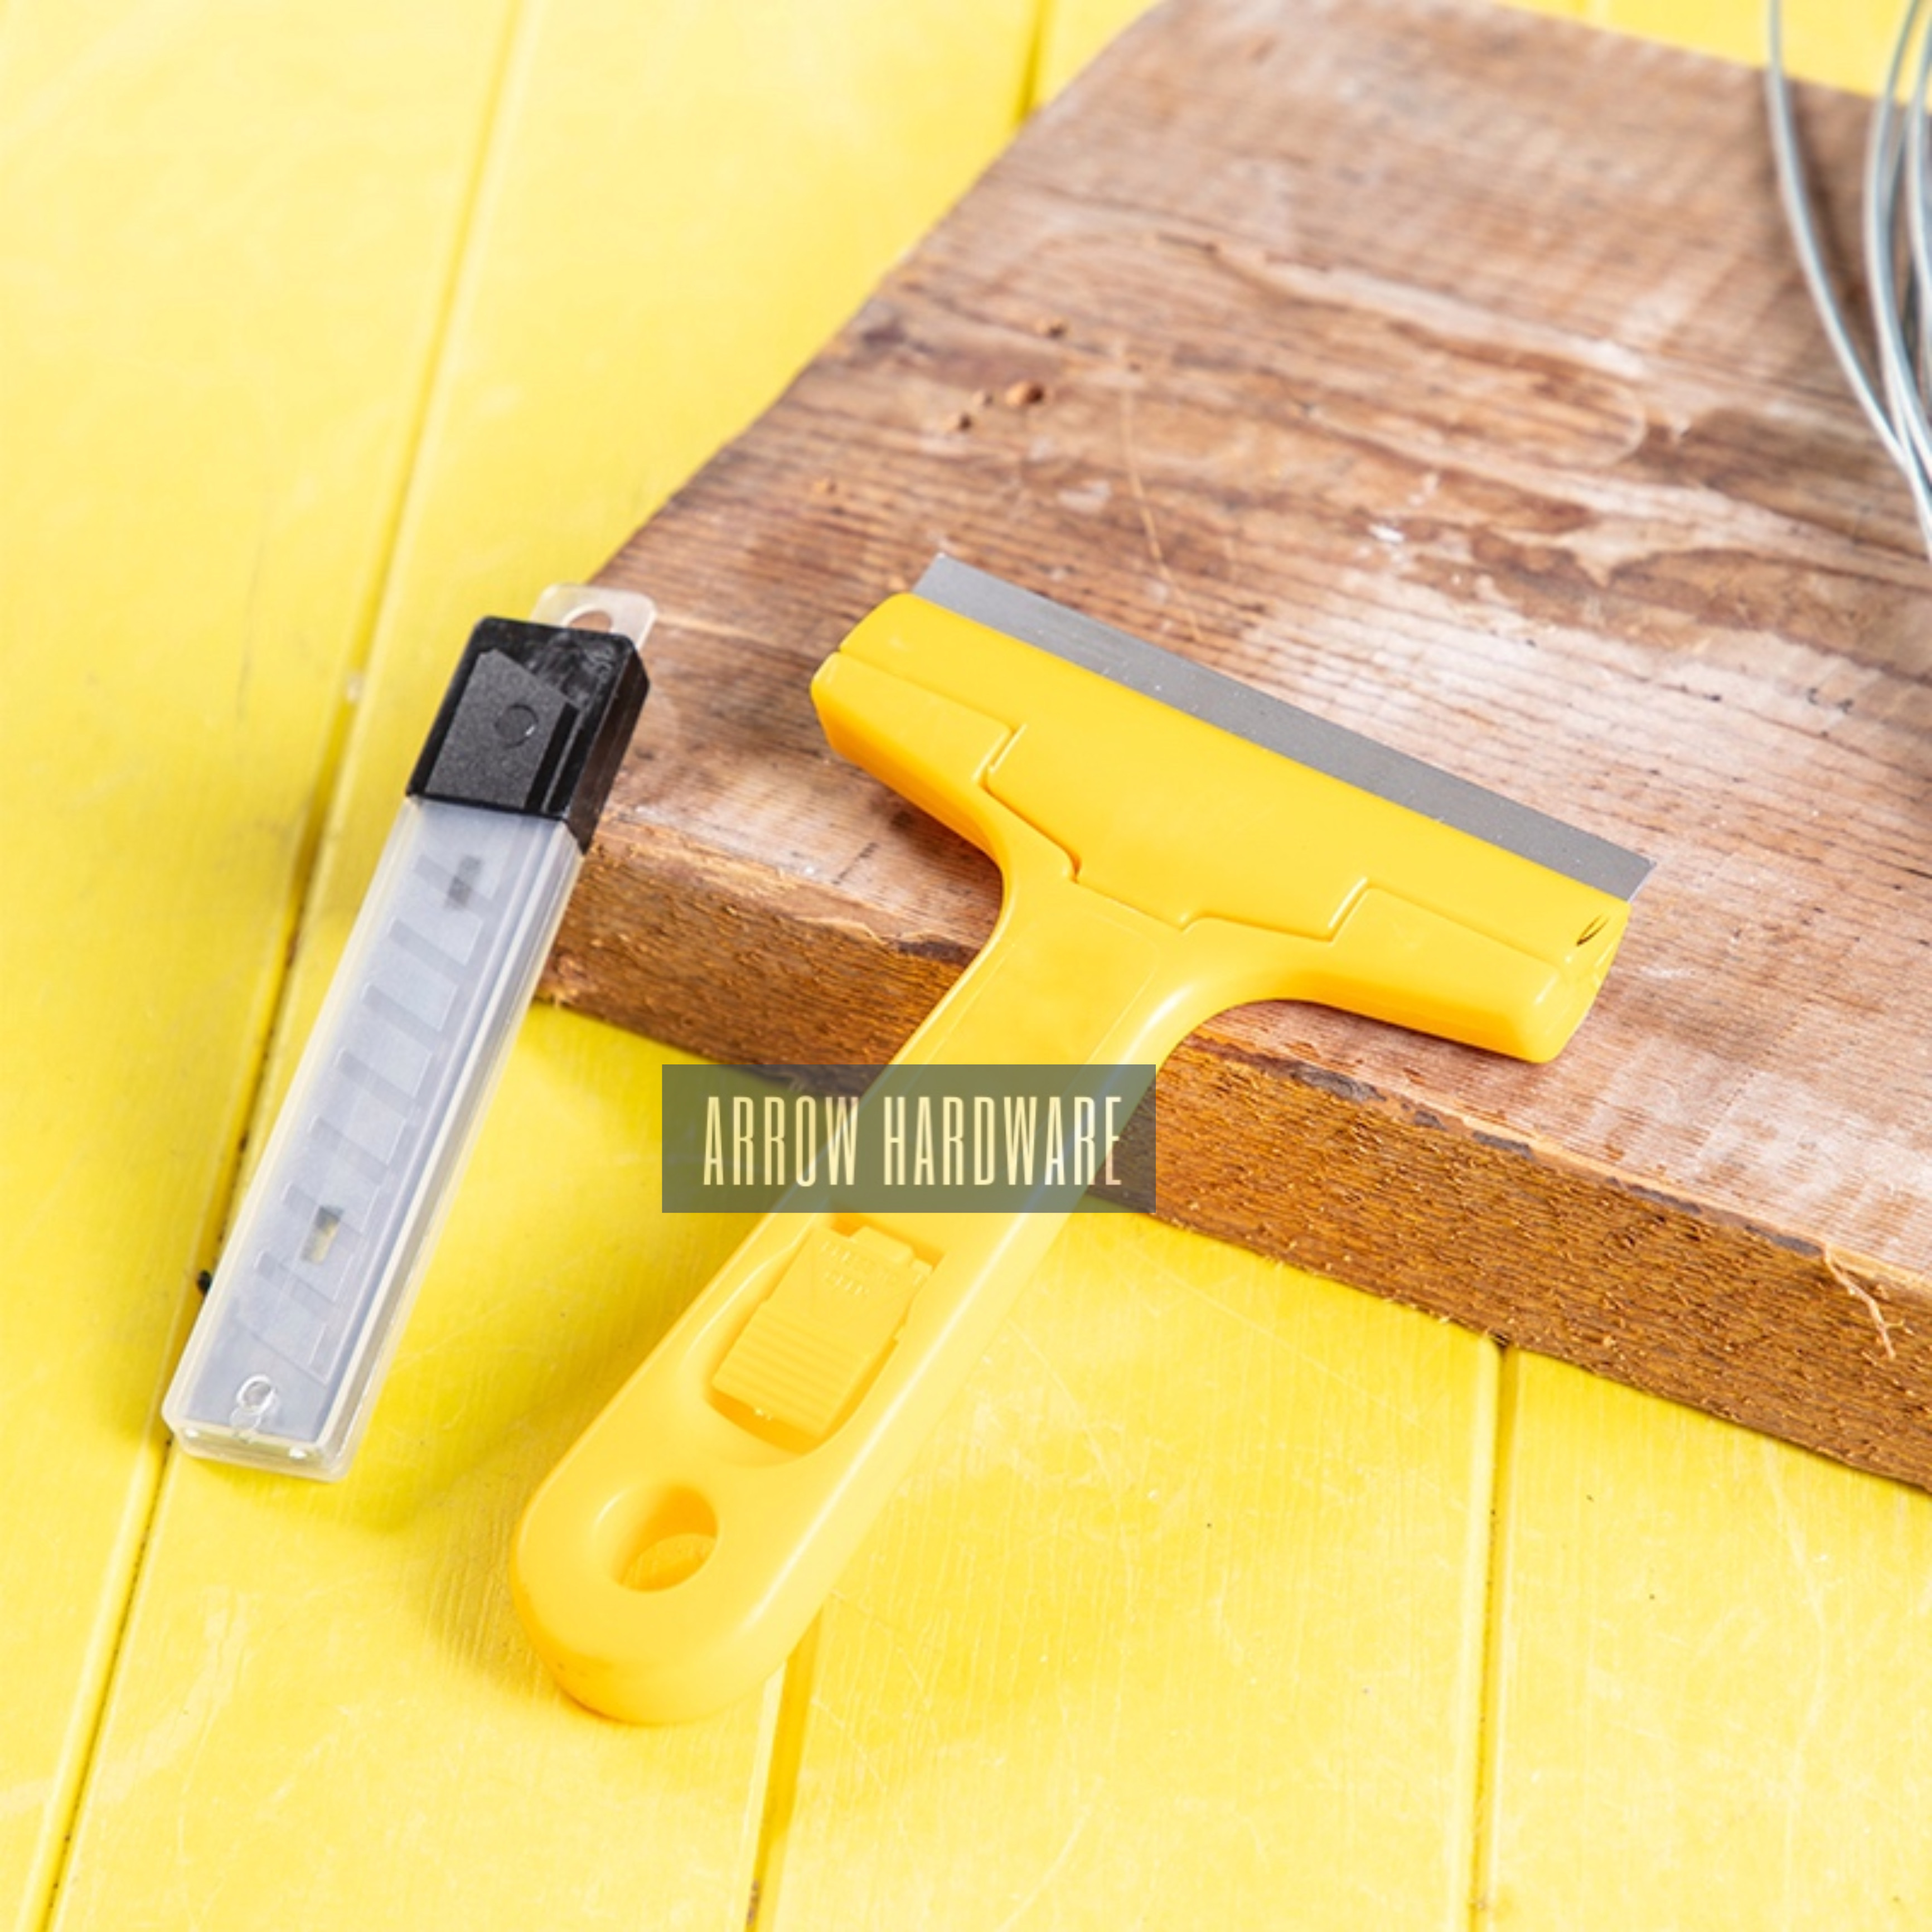 Deli 200mm Portable Cleaning Shovel Knife for Glass Floor Tiles Floor